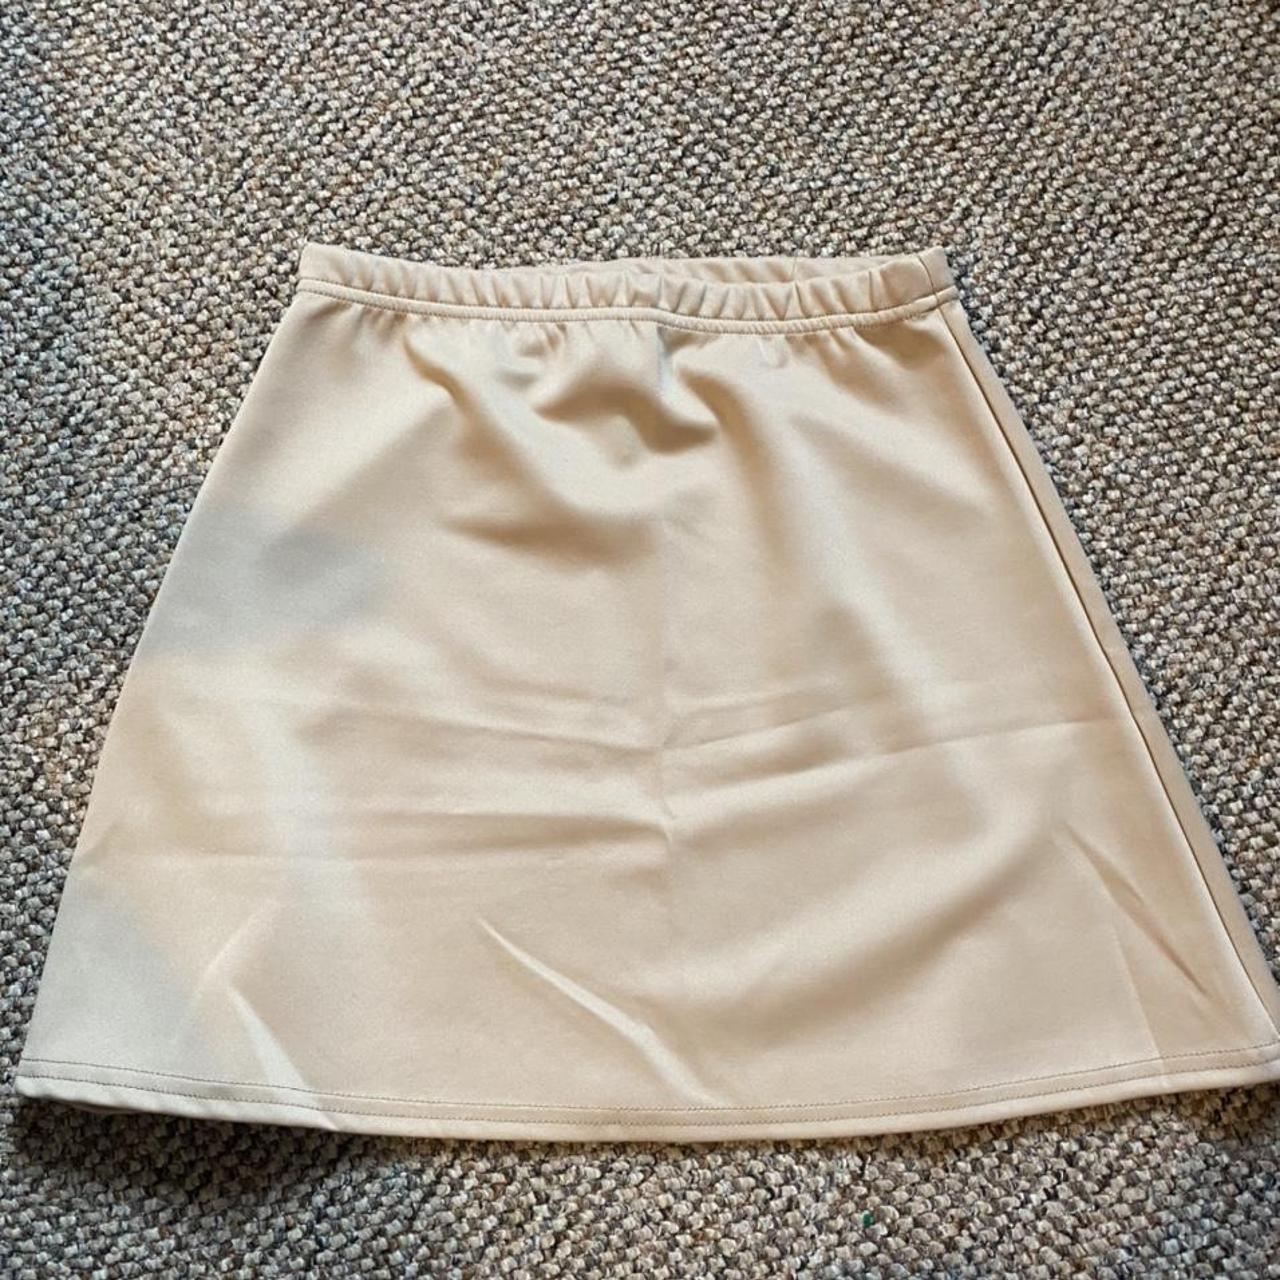 Pretty Little Thing Cream Mini Skirt Never... - Depop